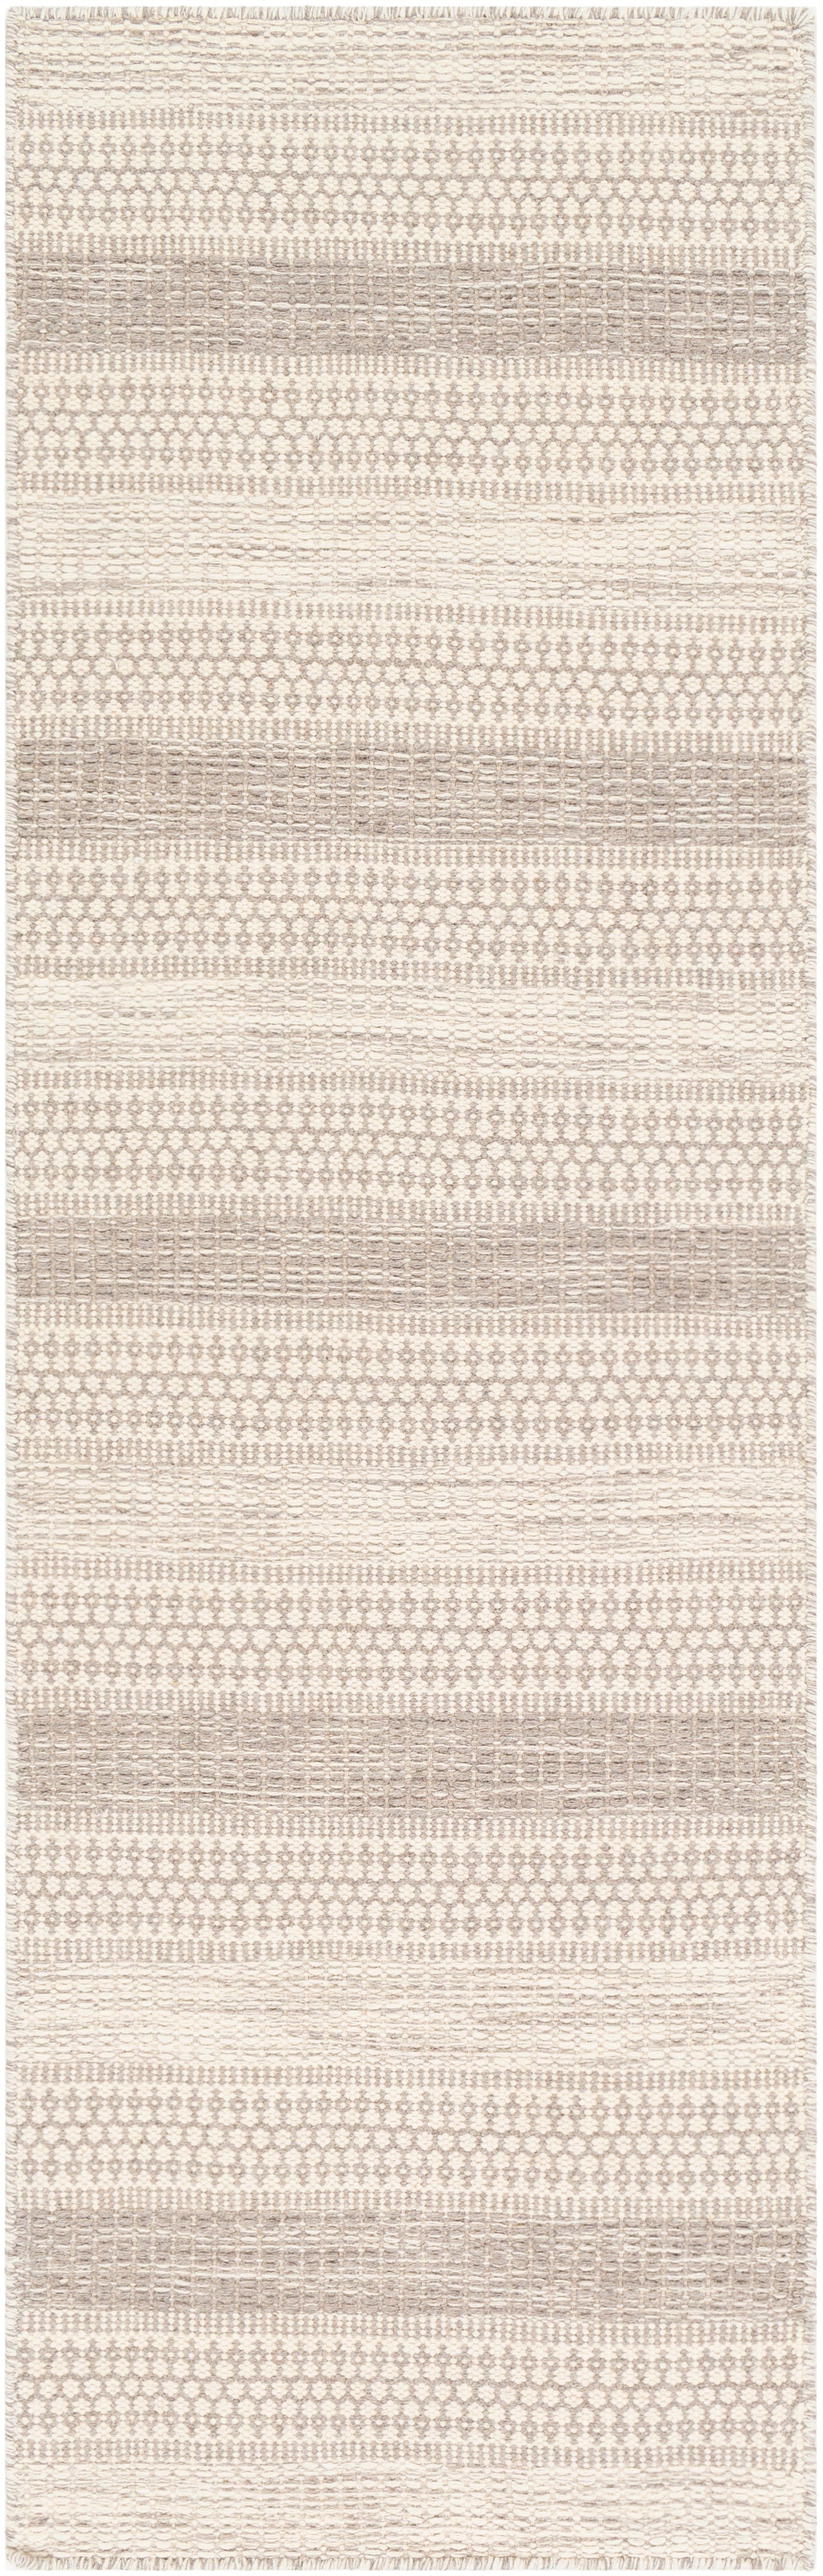 Mardin 24188 Hand Woven Wool Indoor Area Rug by Surya Rugs